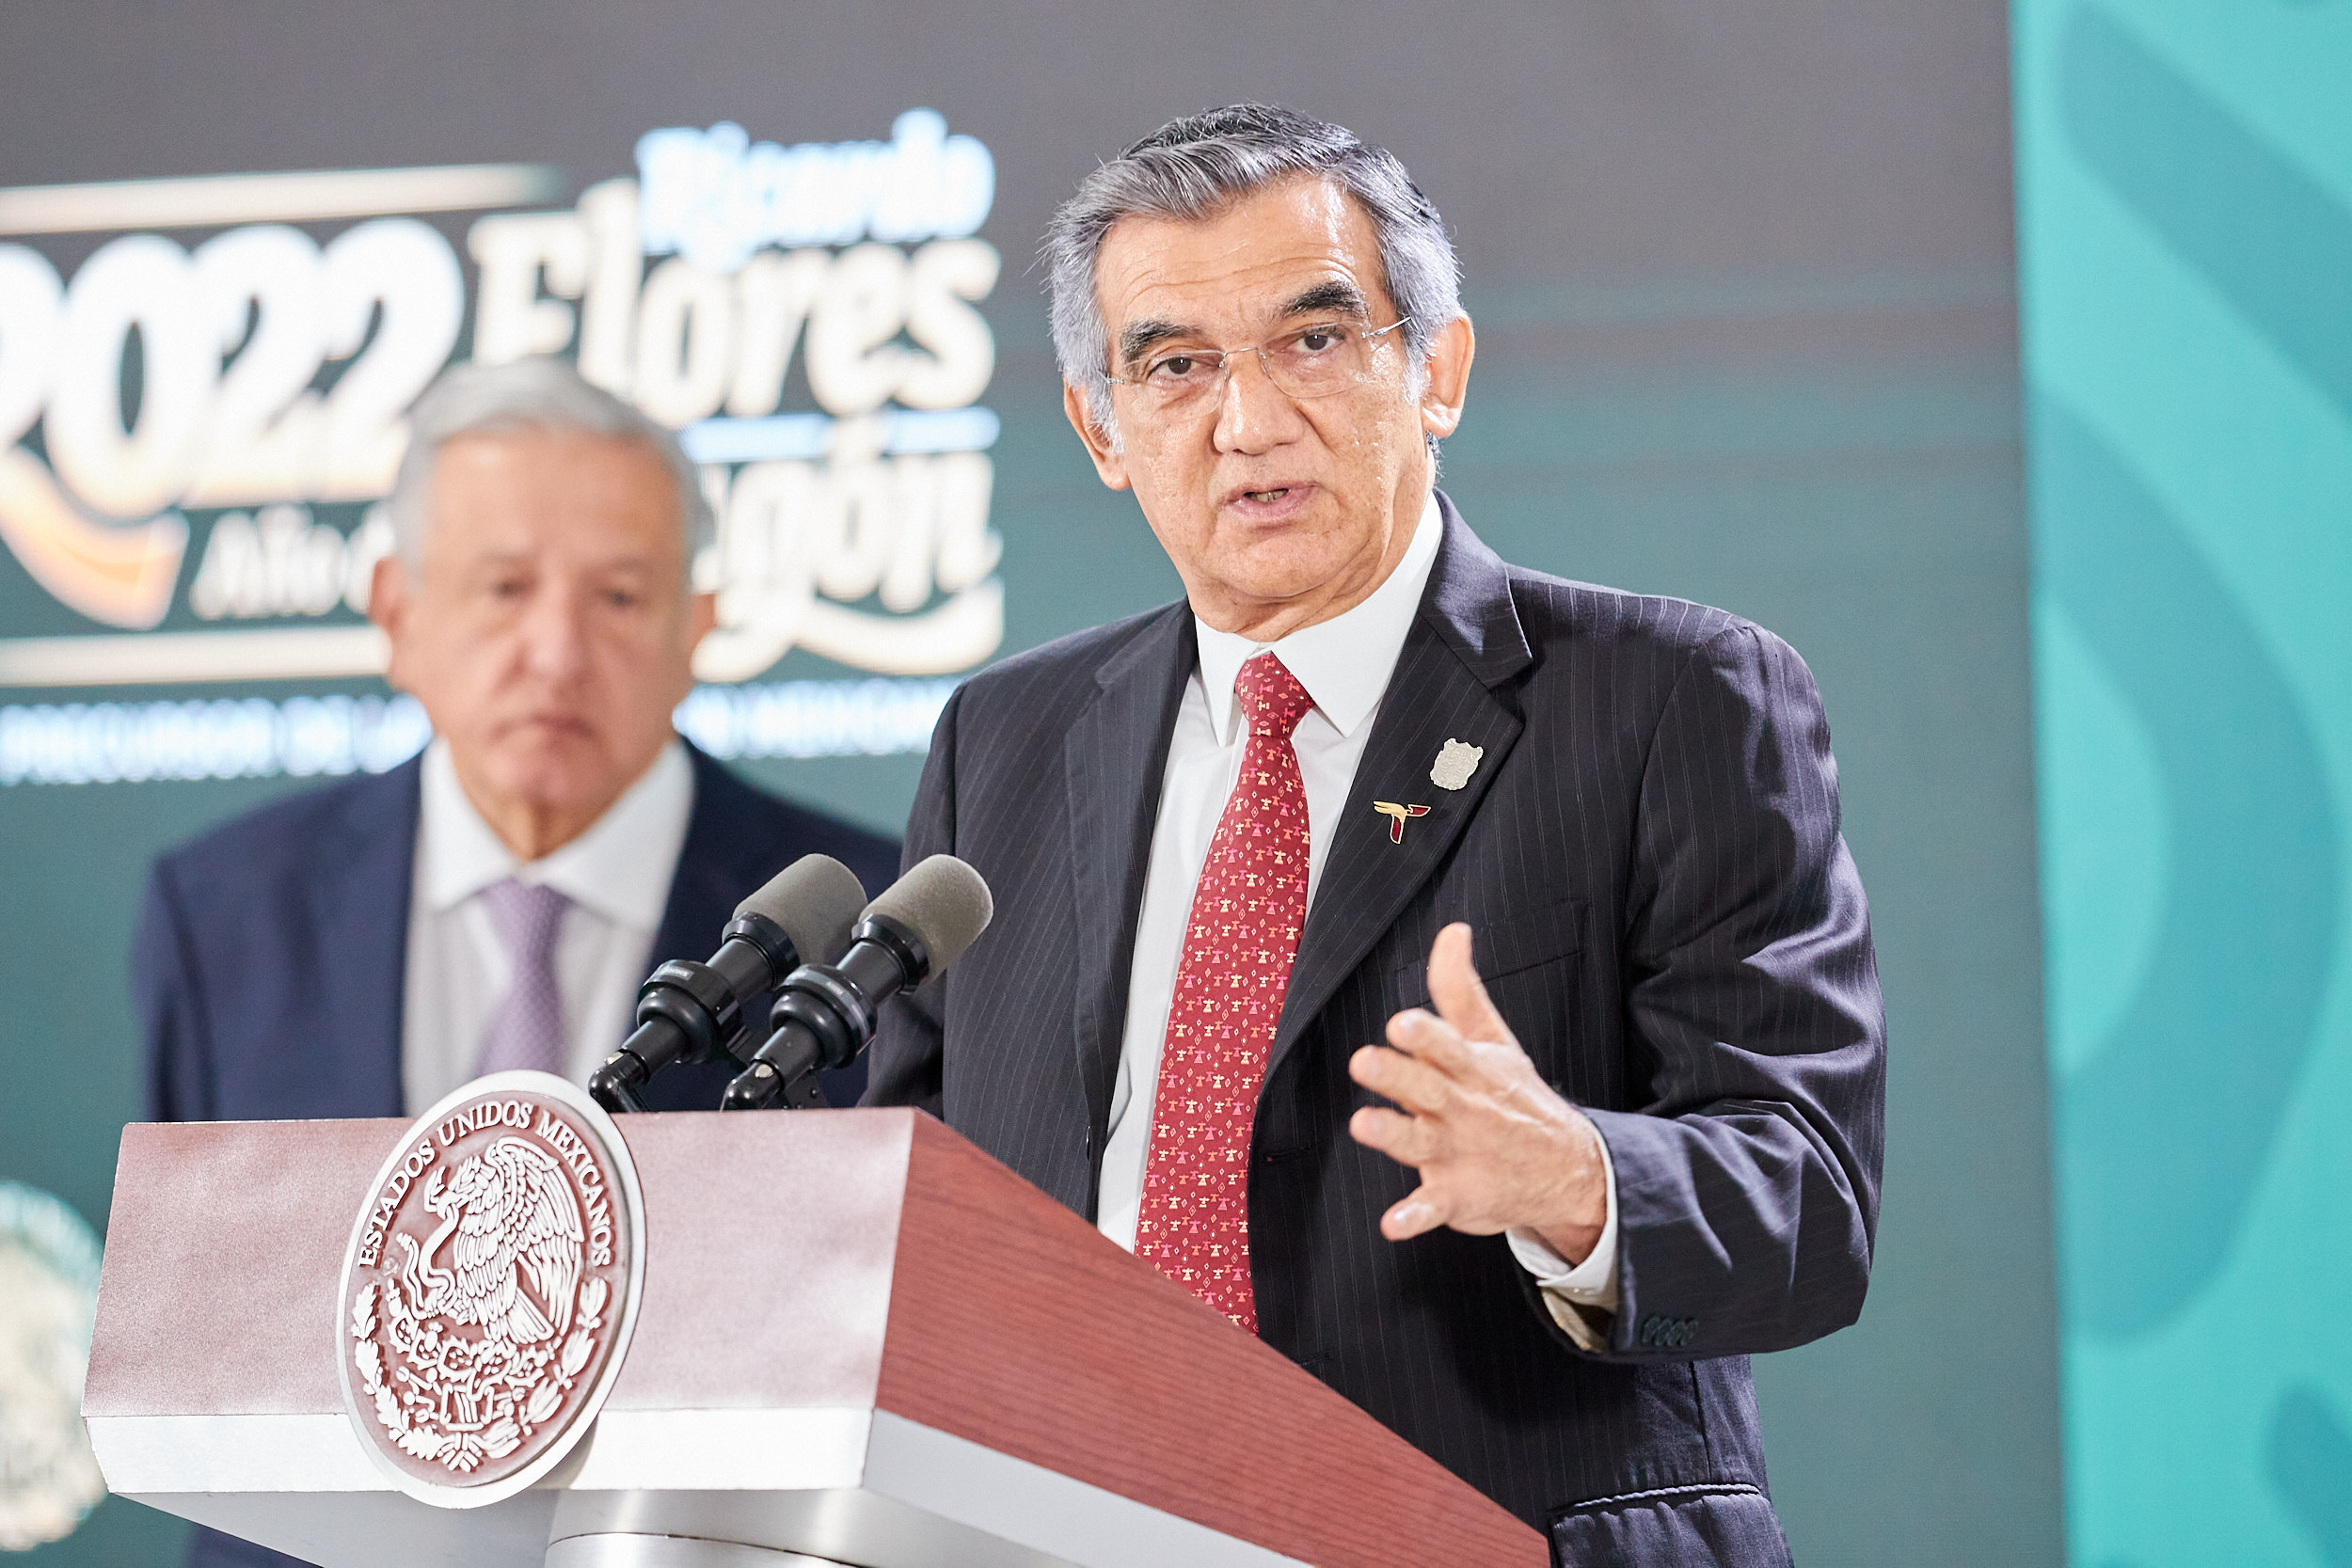 El cambio que se ha iniciado en Tamaulipas, es de fondo, afirma el gobernador